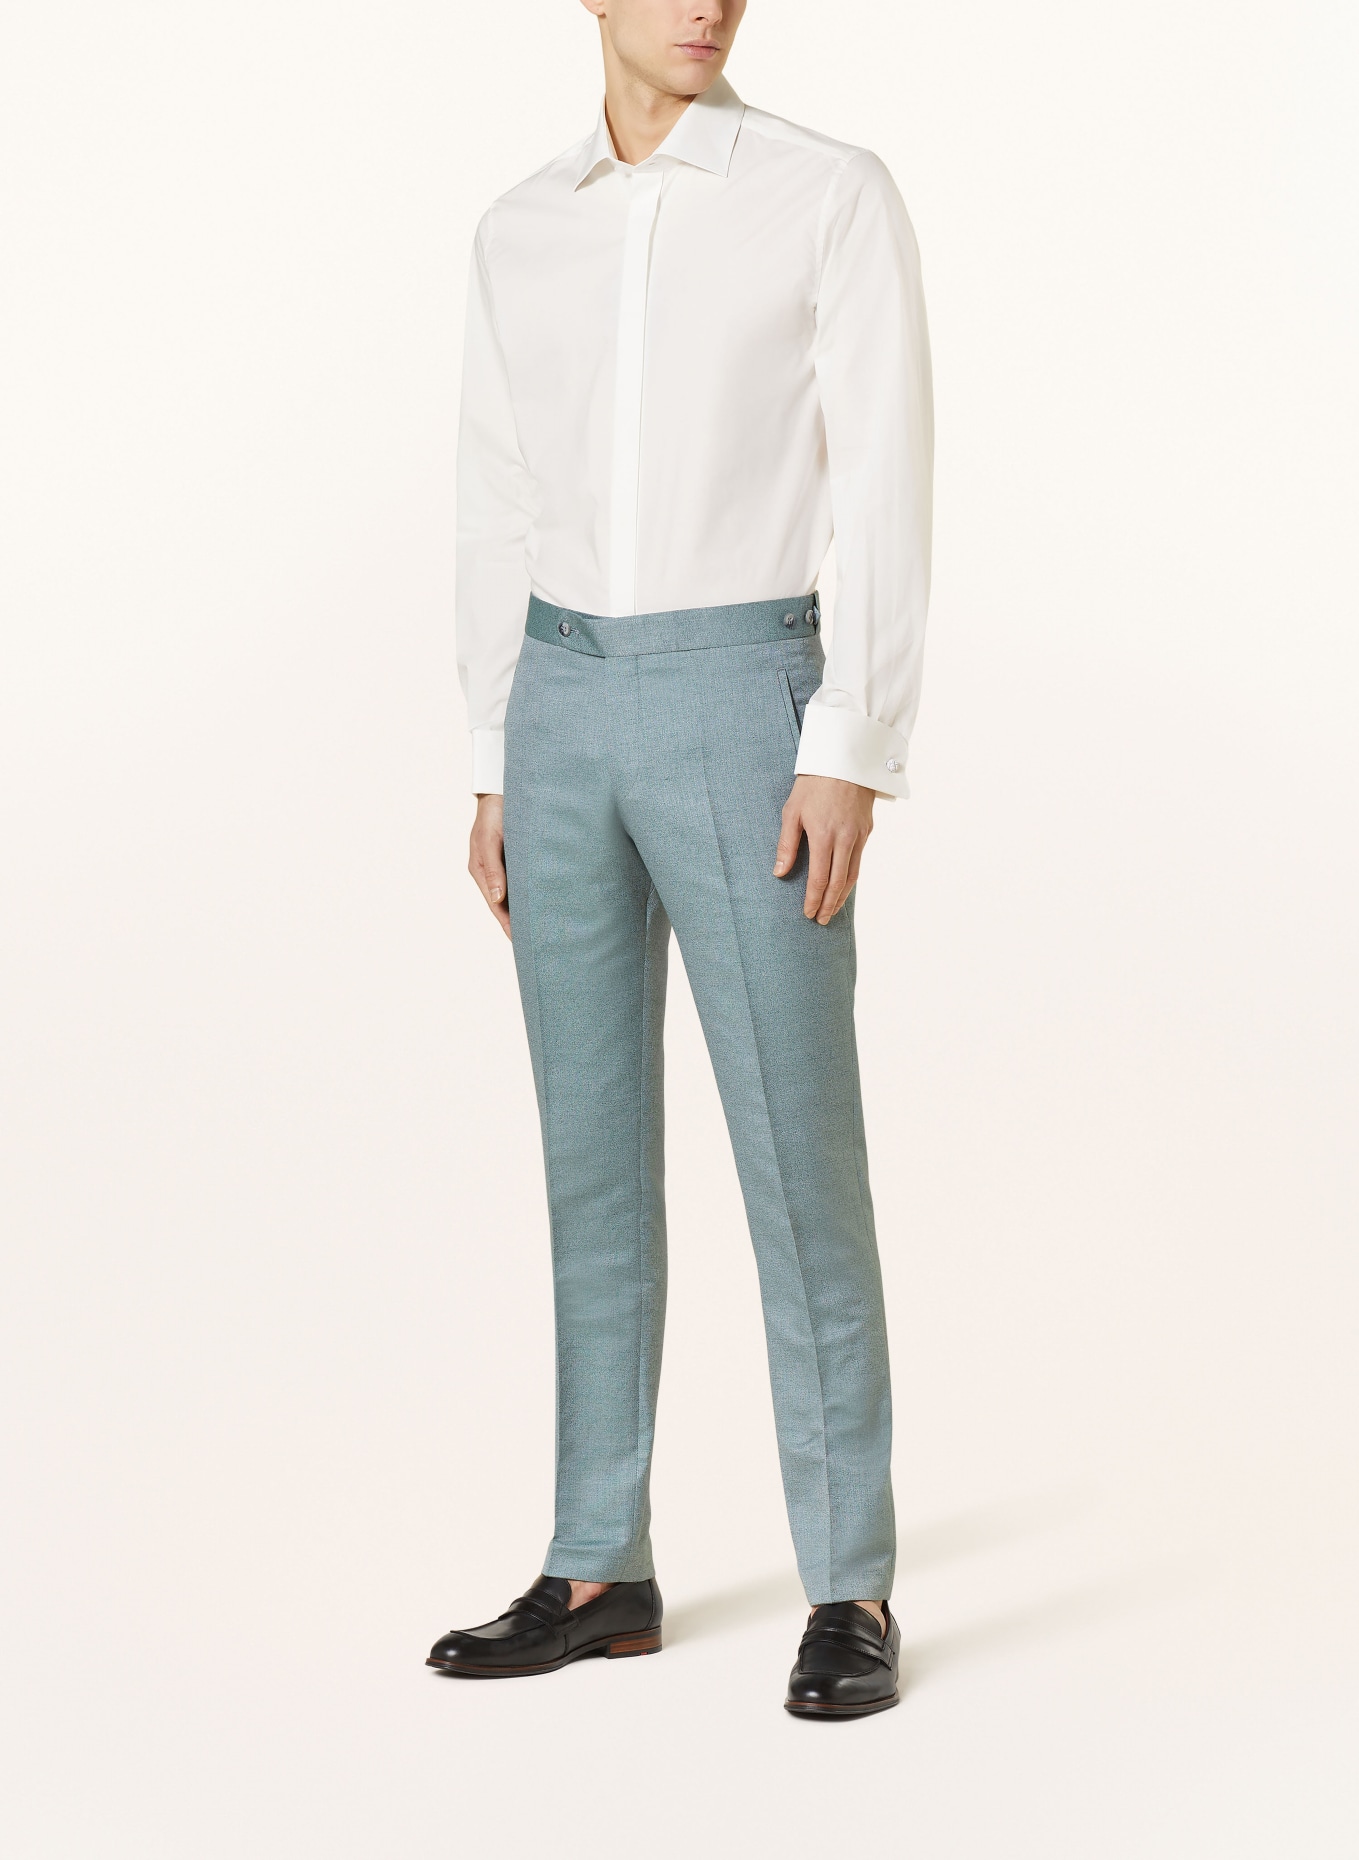 WILVORST Suit trousers extra slim fit, Color: 045 grün (Image 3)